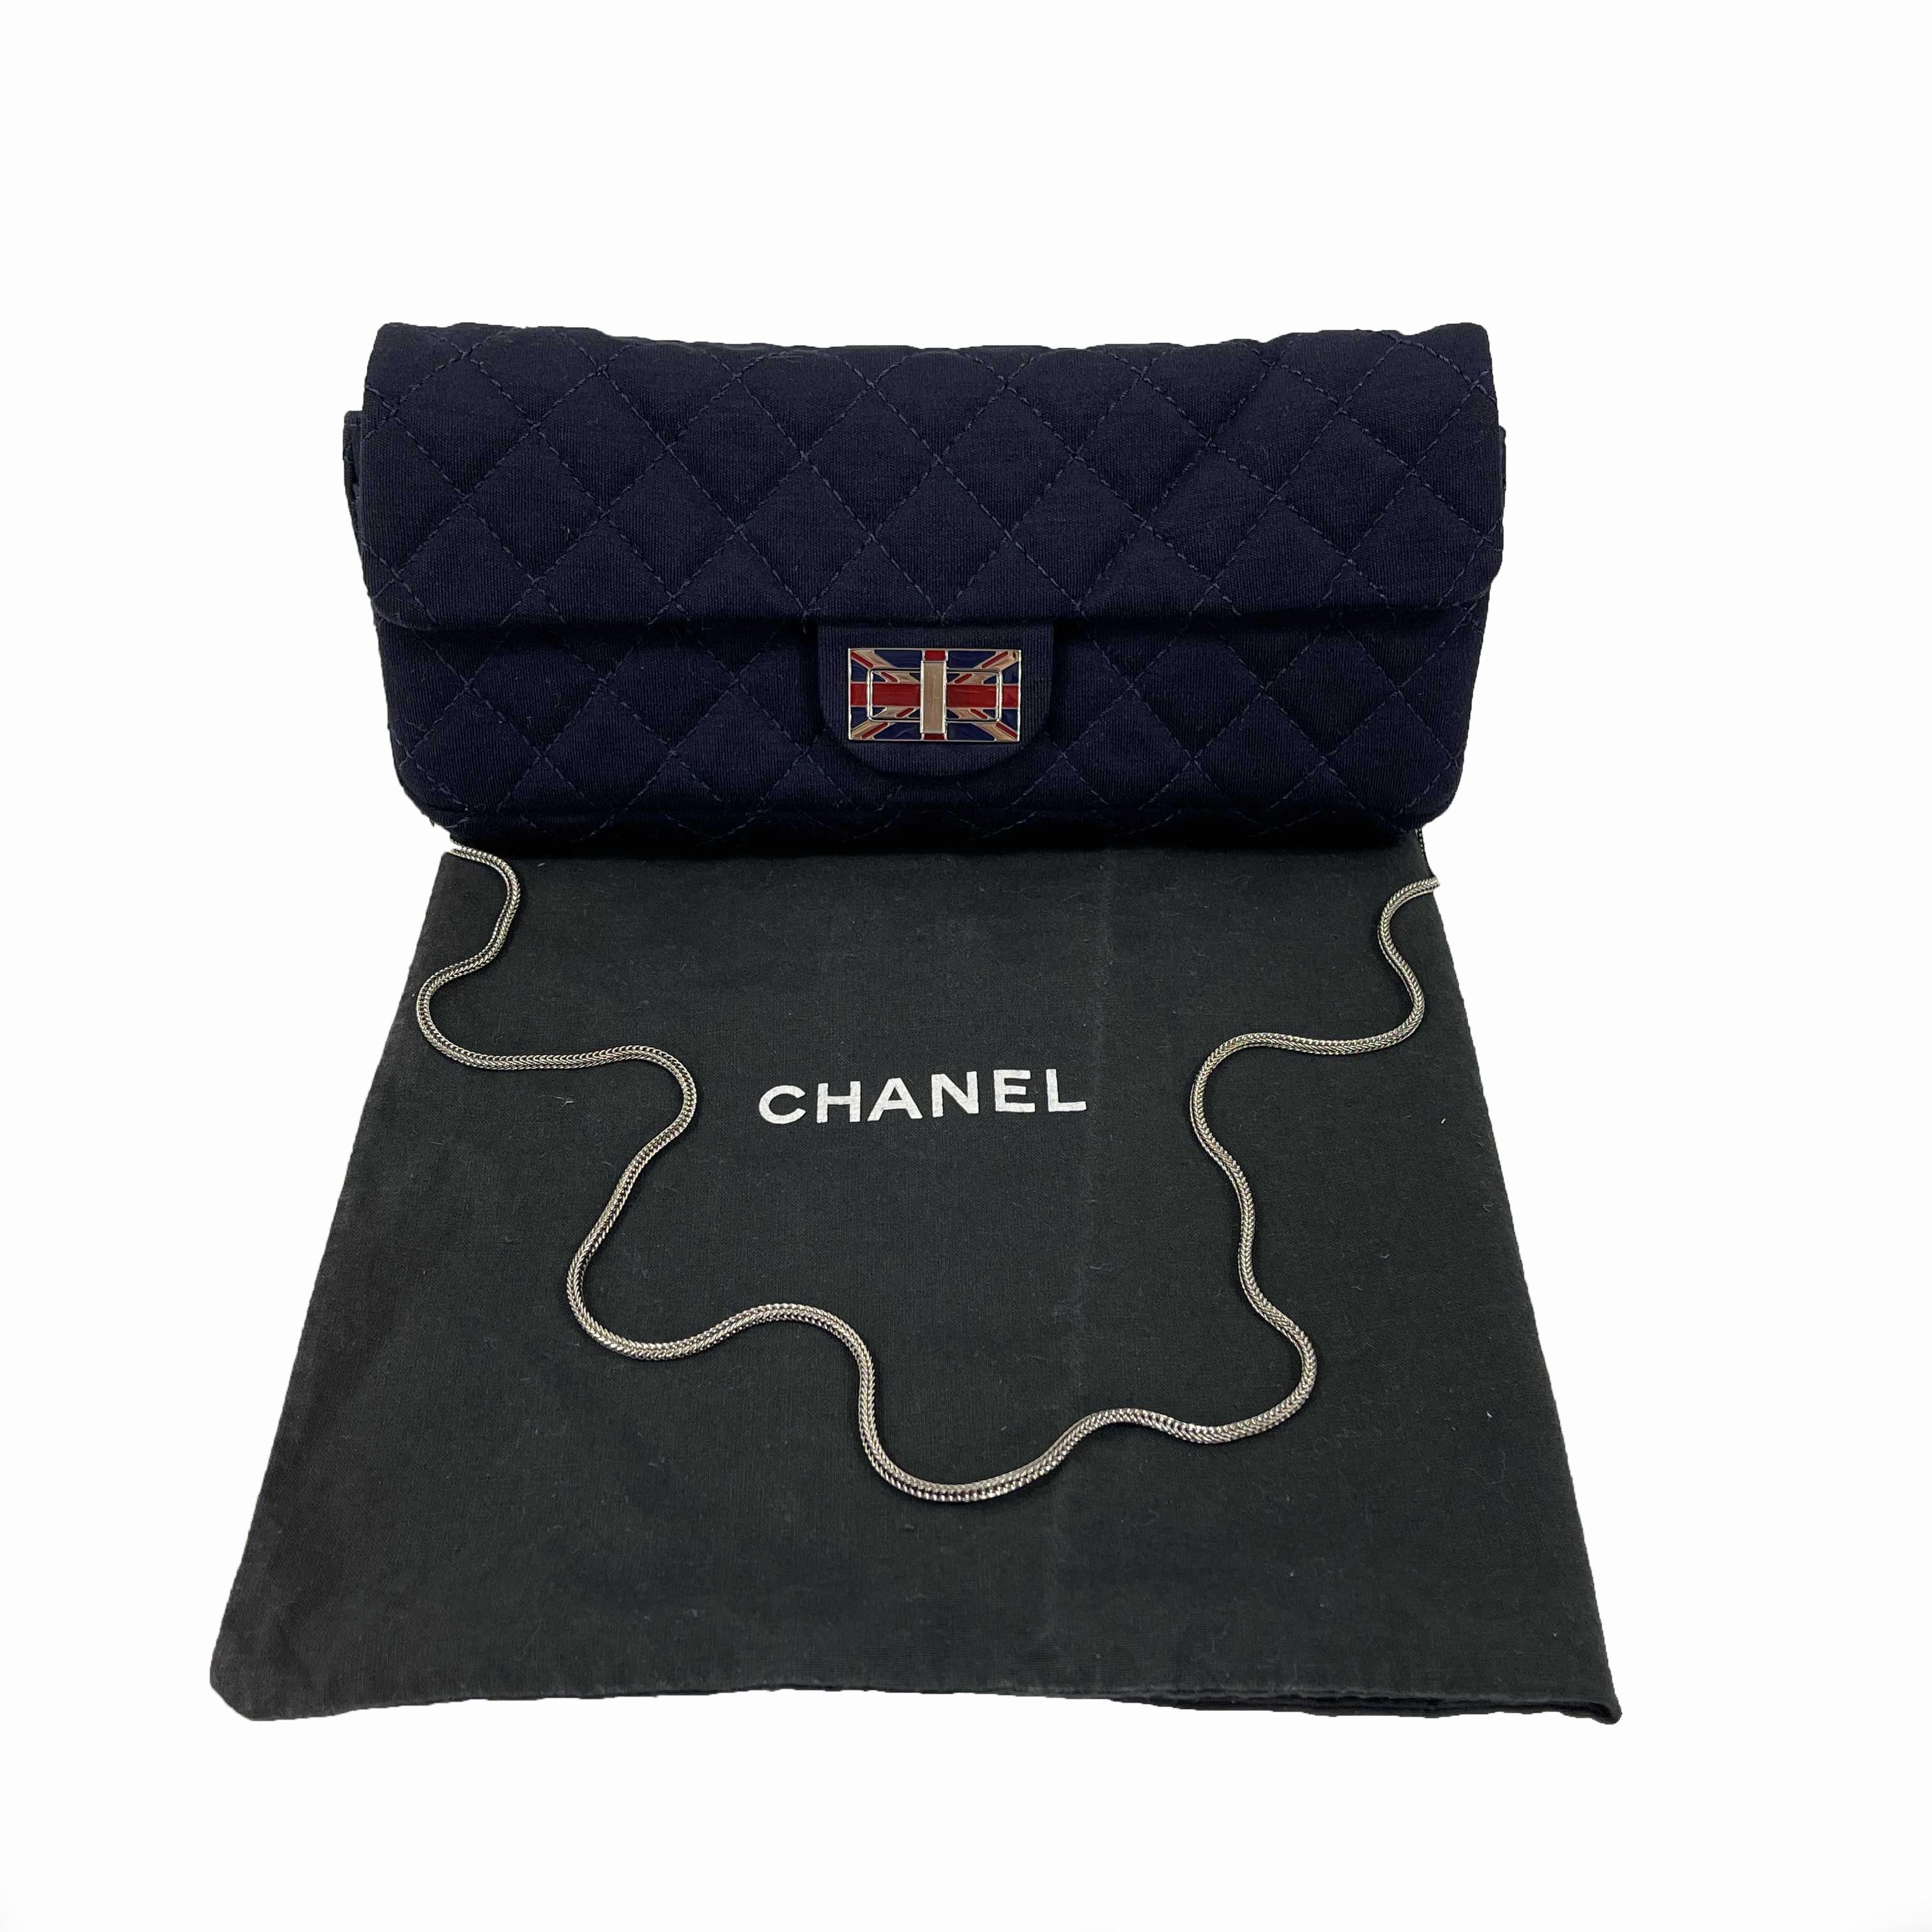 CHANEL 2008 Paris London Union Jack Navy Blue Flap Clutch / Shoulder Bag For Sale 1